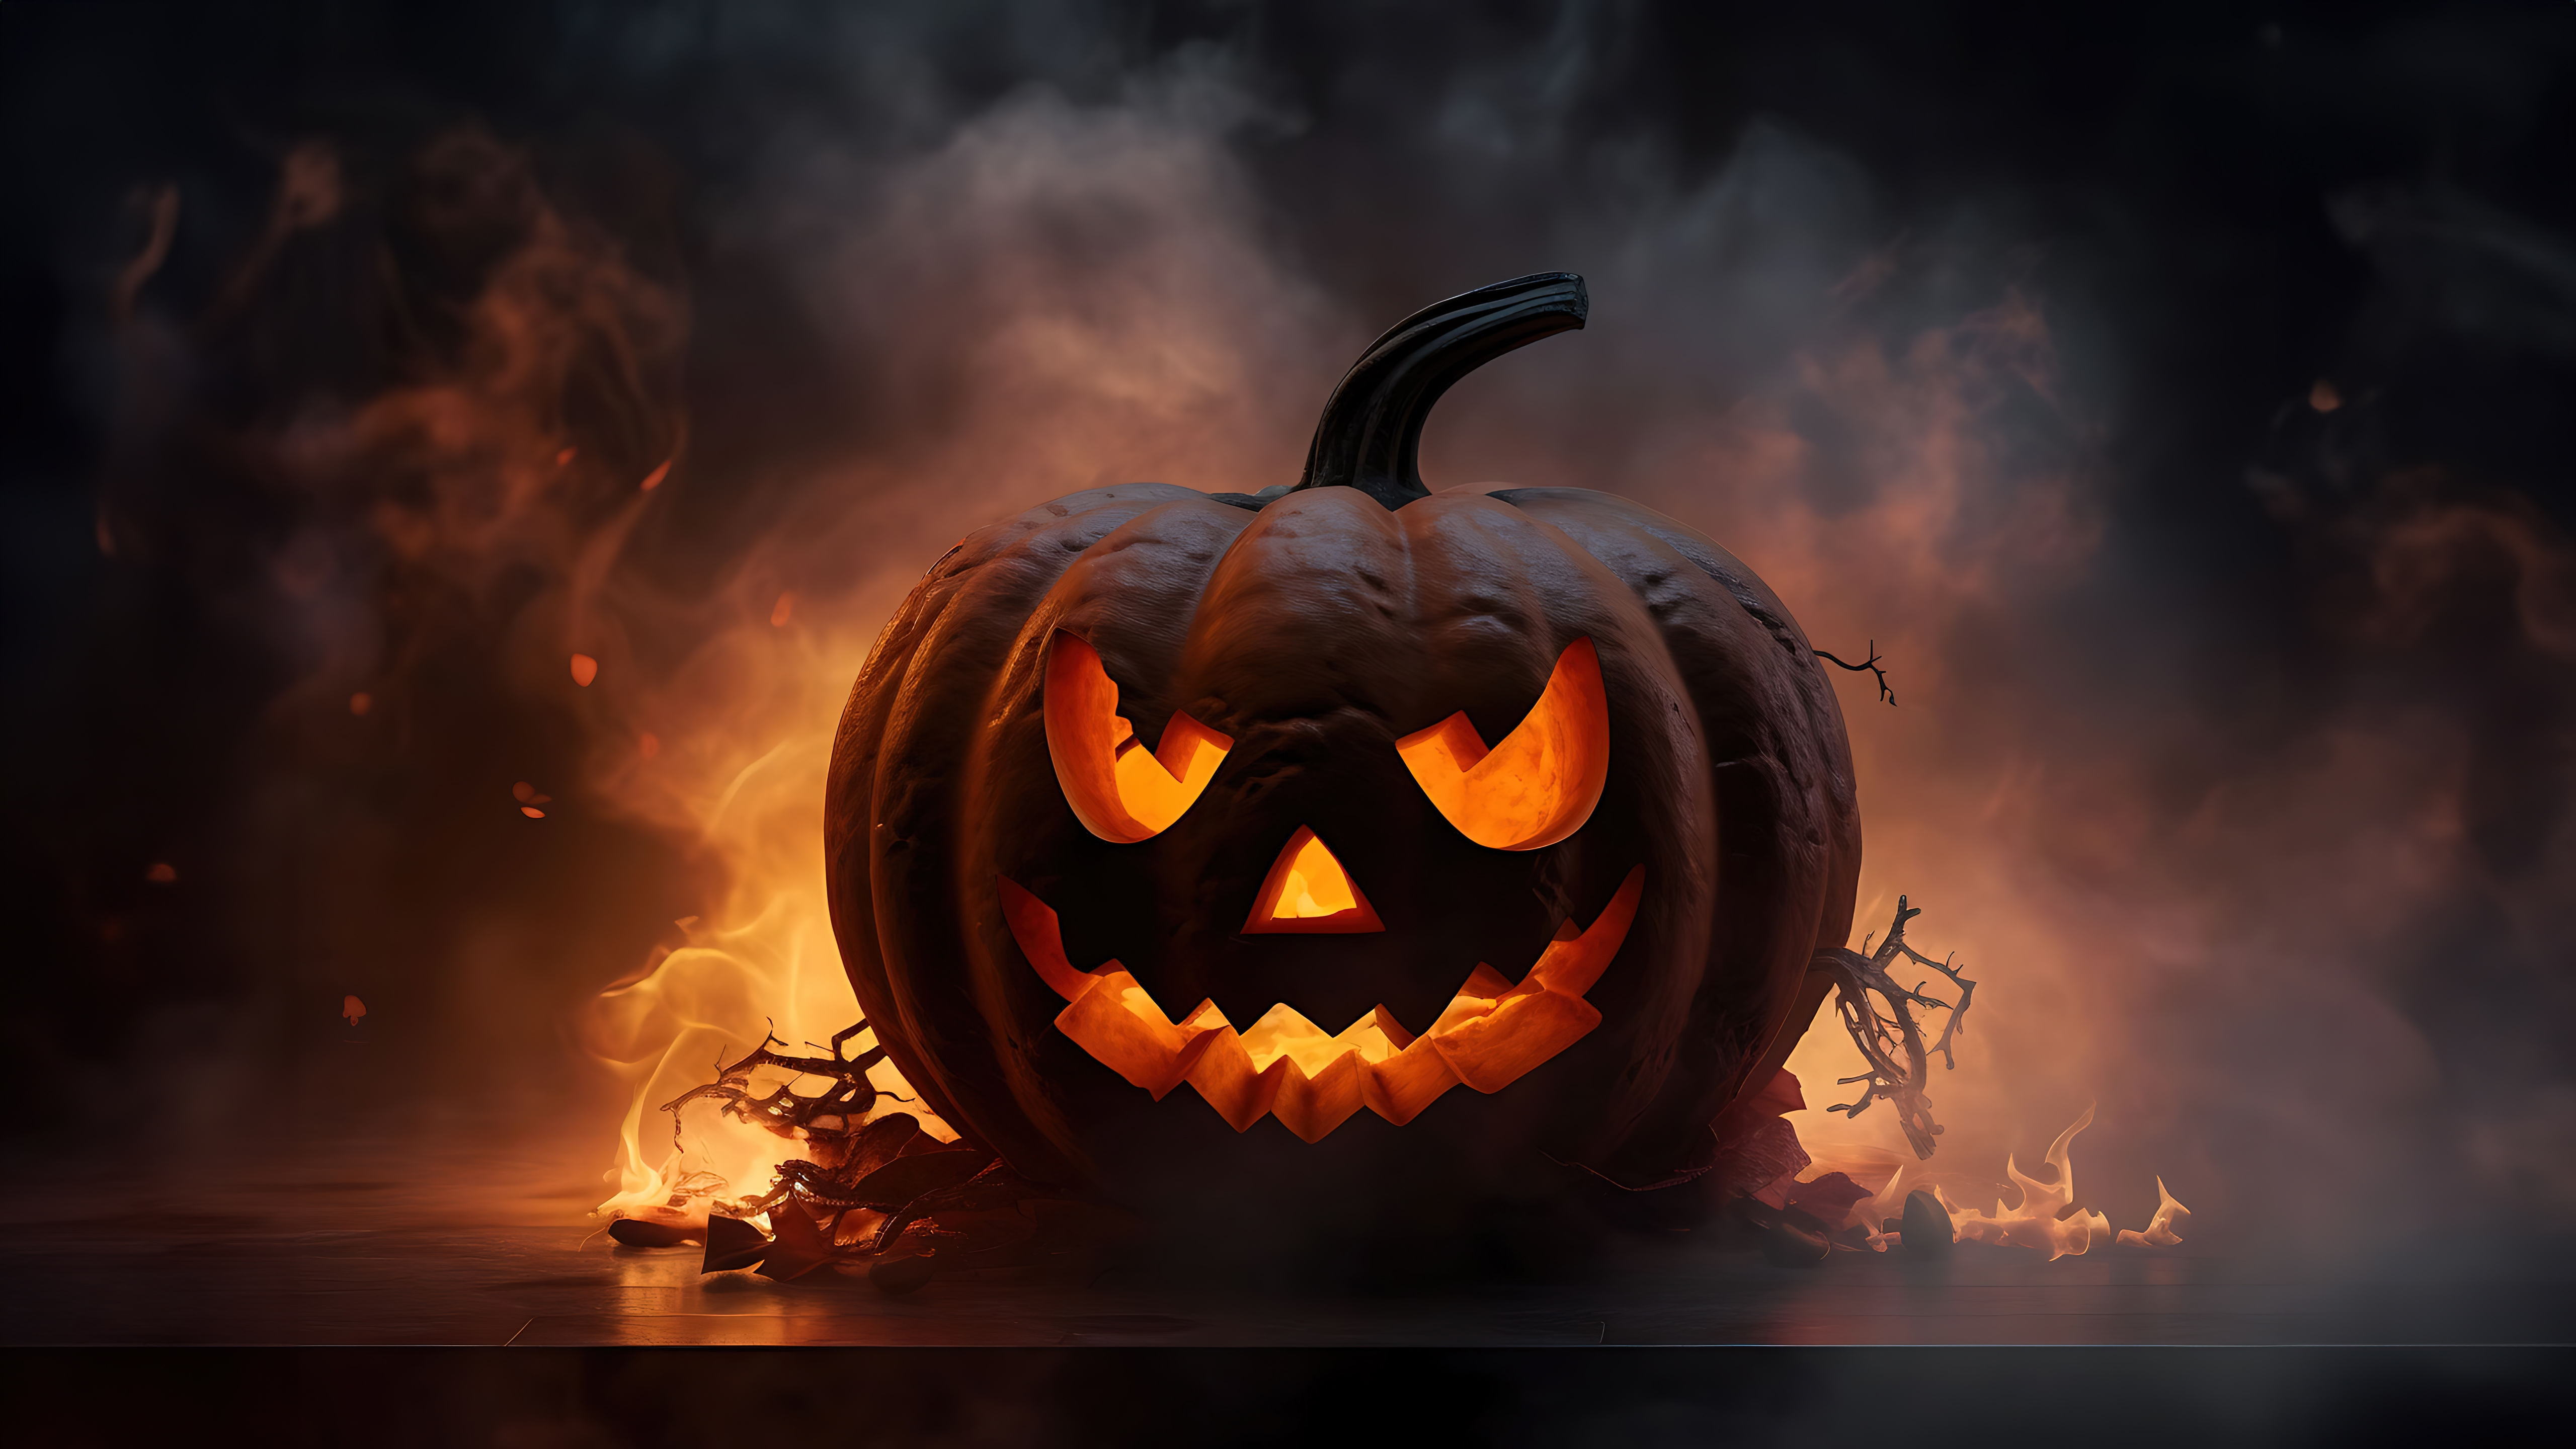 HD wallpaper, Fire, Scary, Halloween Pumpkin, Ai Art, 5K